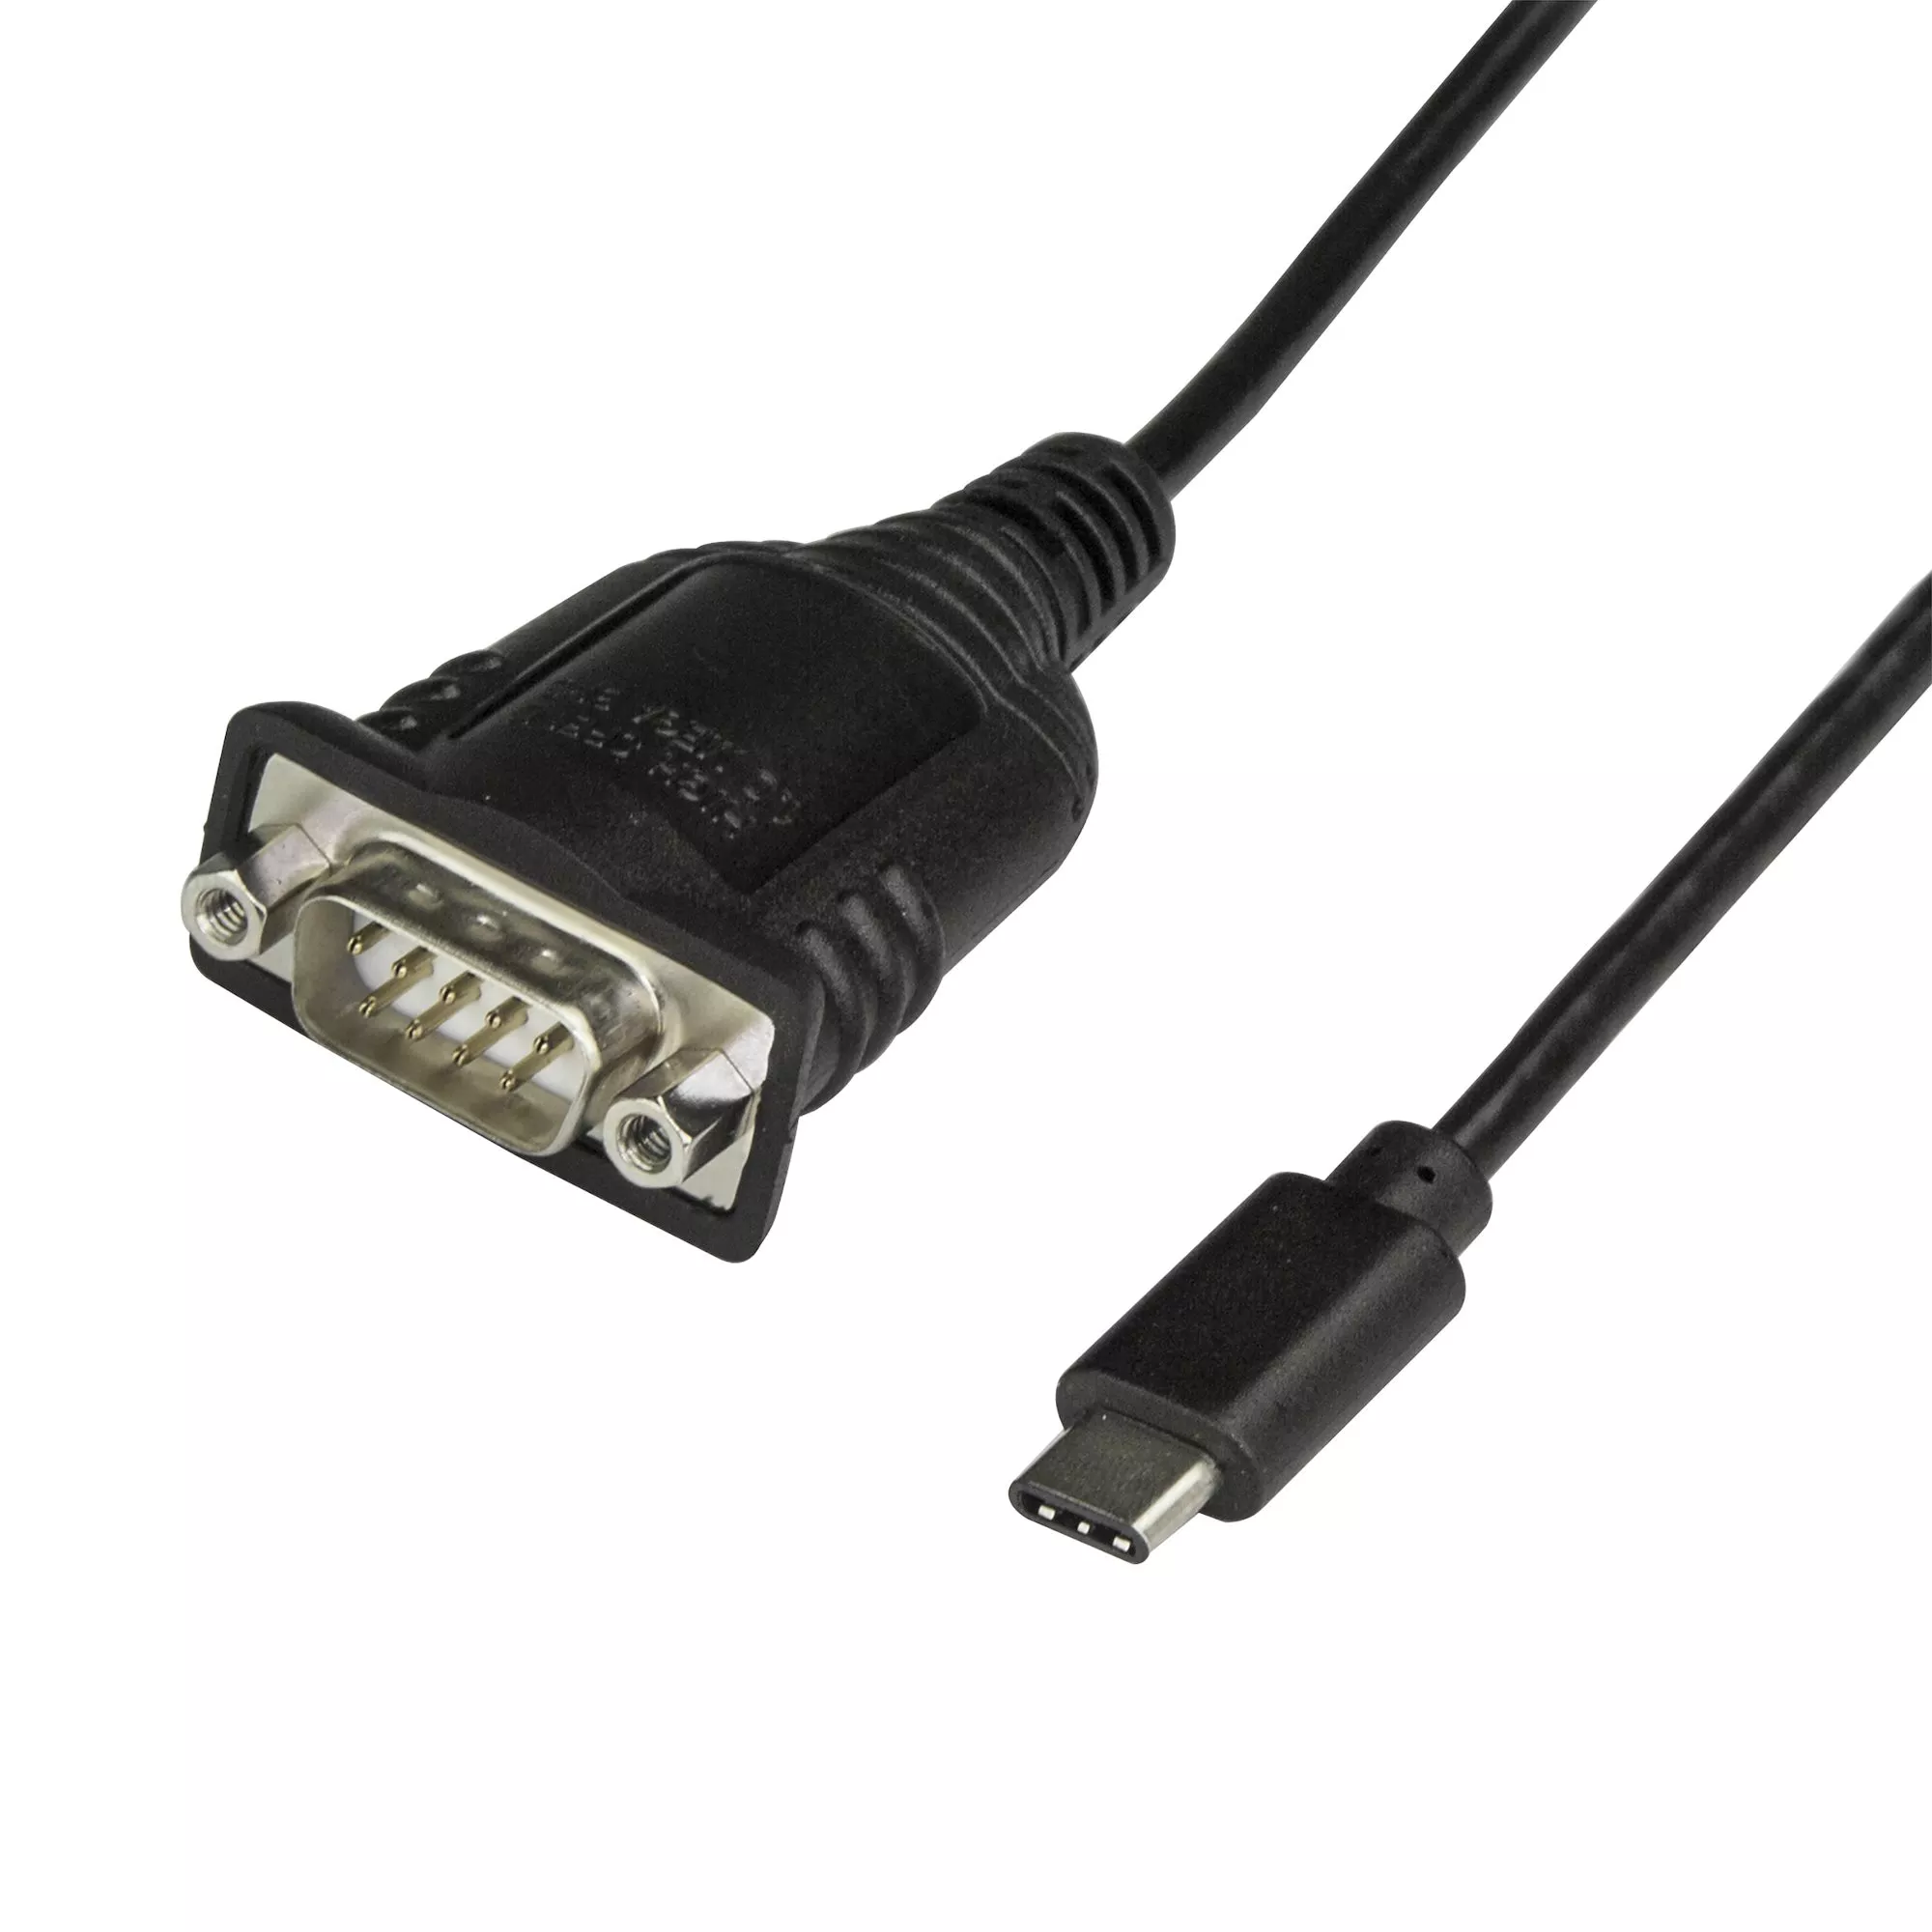 Achat StarTech.com Câble Adaptateur USB-C vers Série de 40 cm au meilleur prix